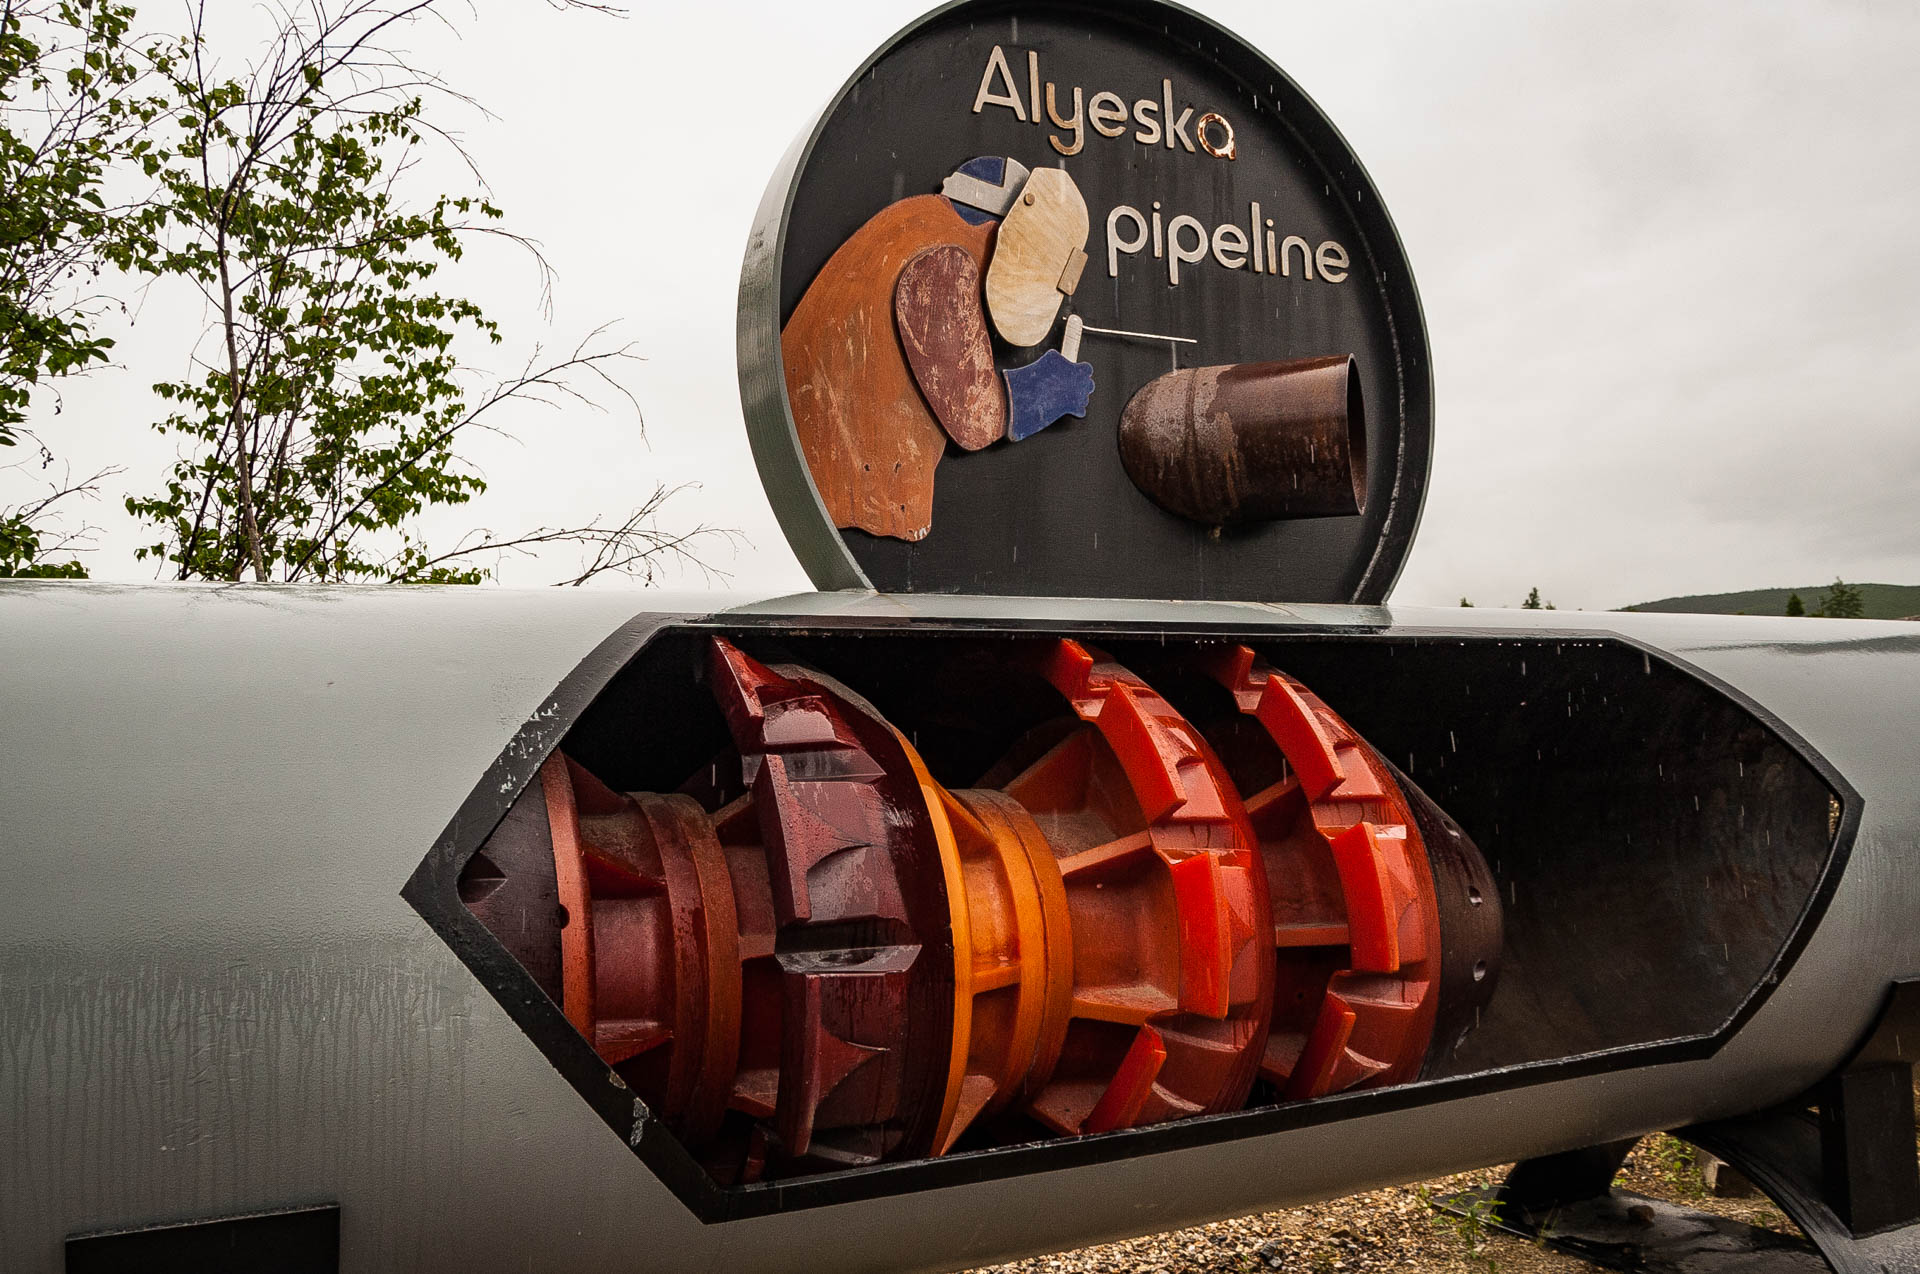 The Alyesko Pipeline